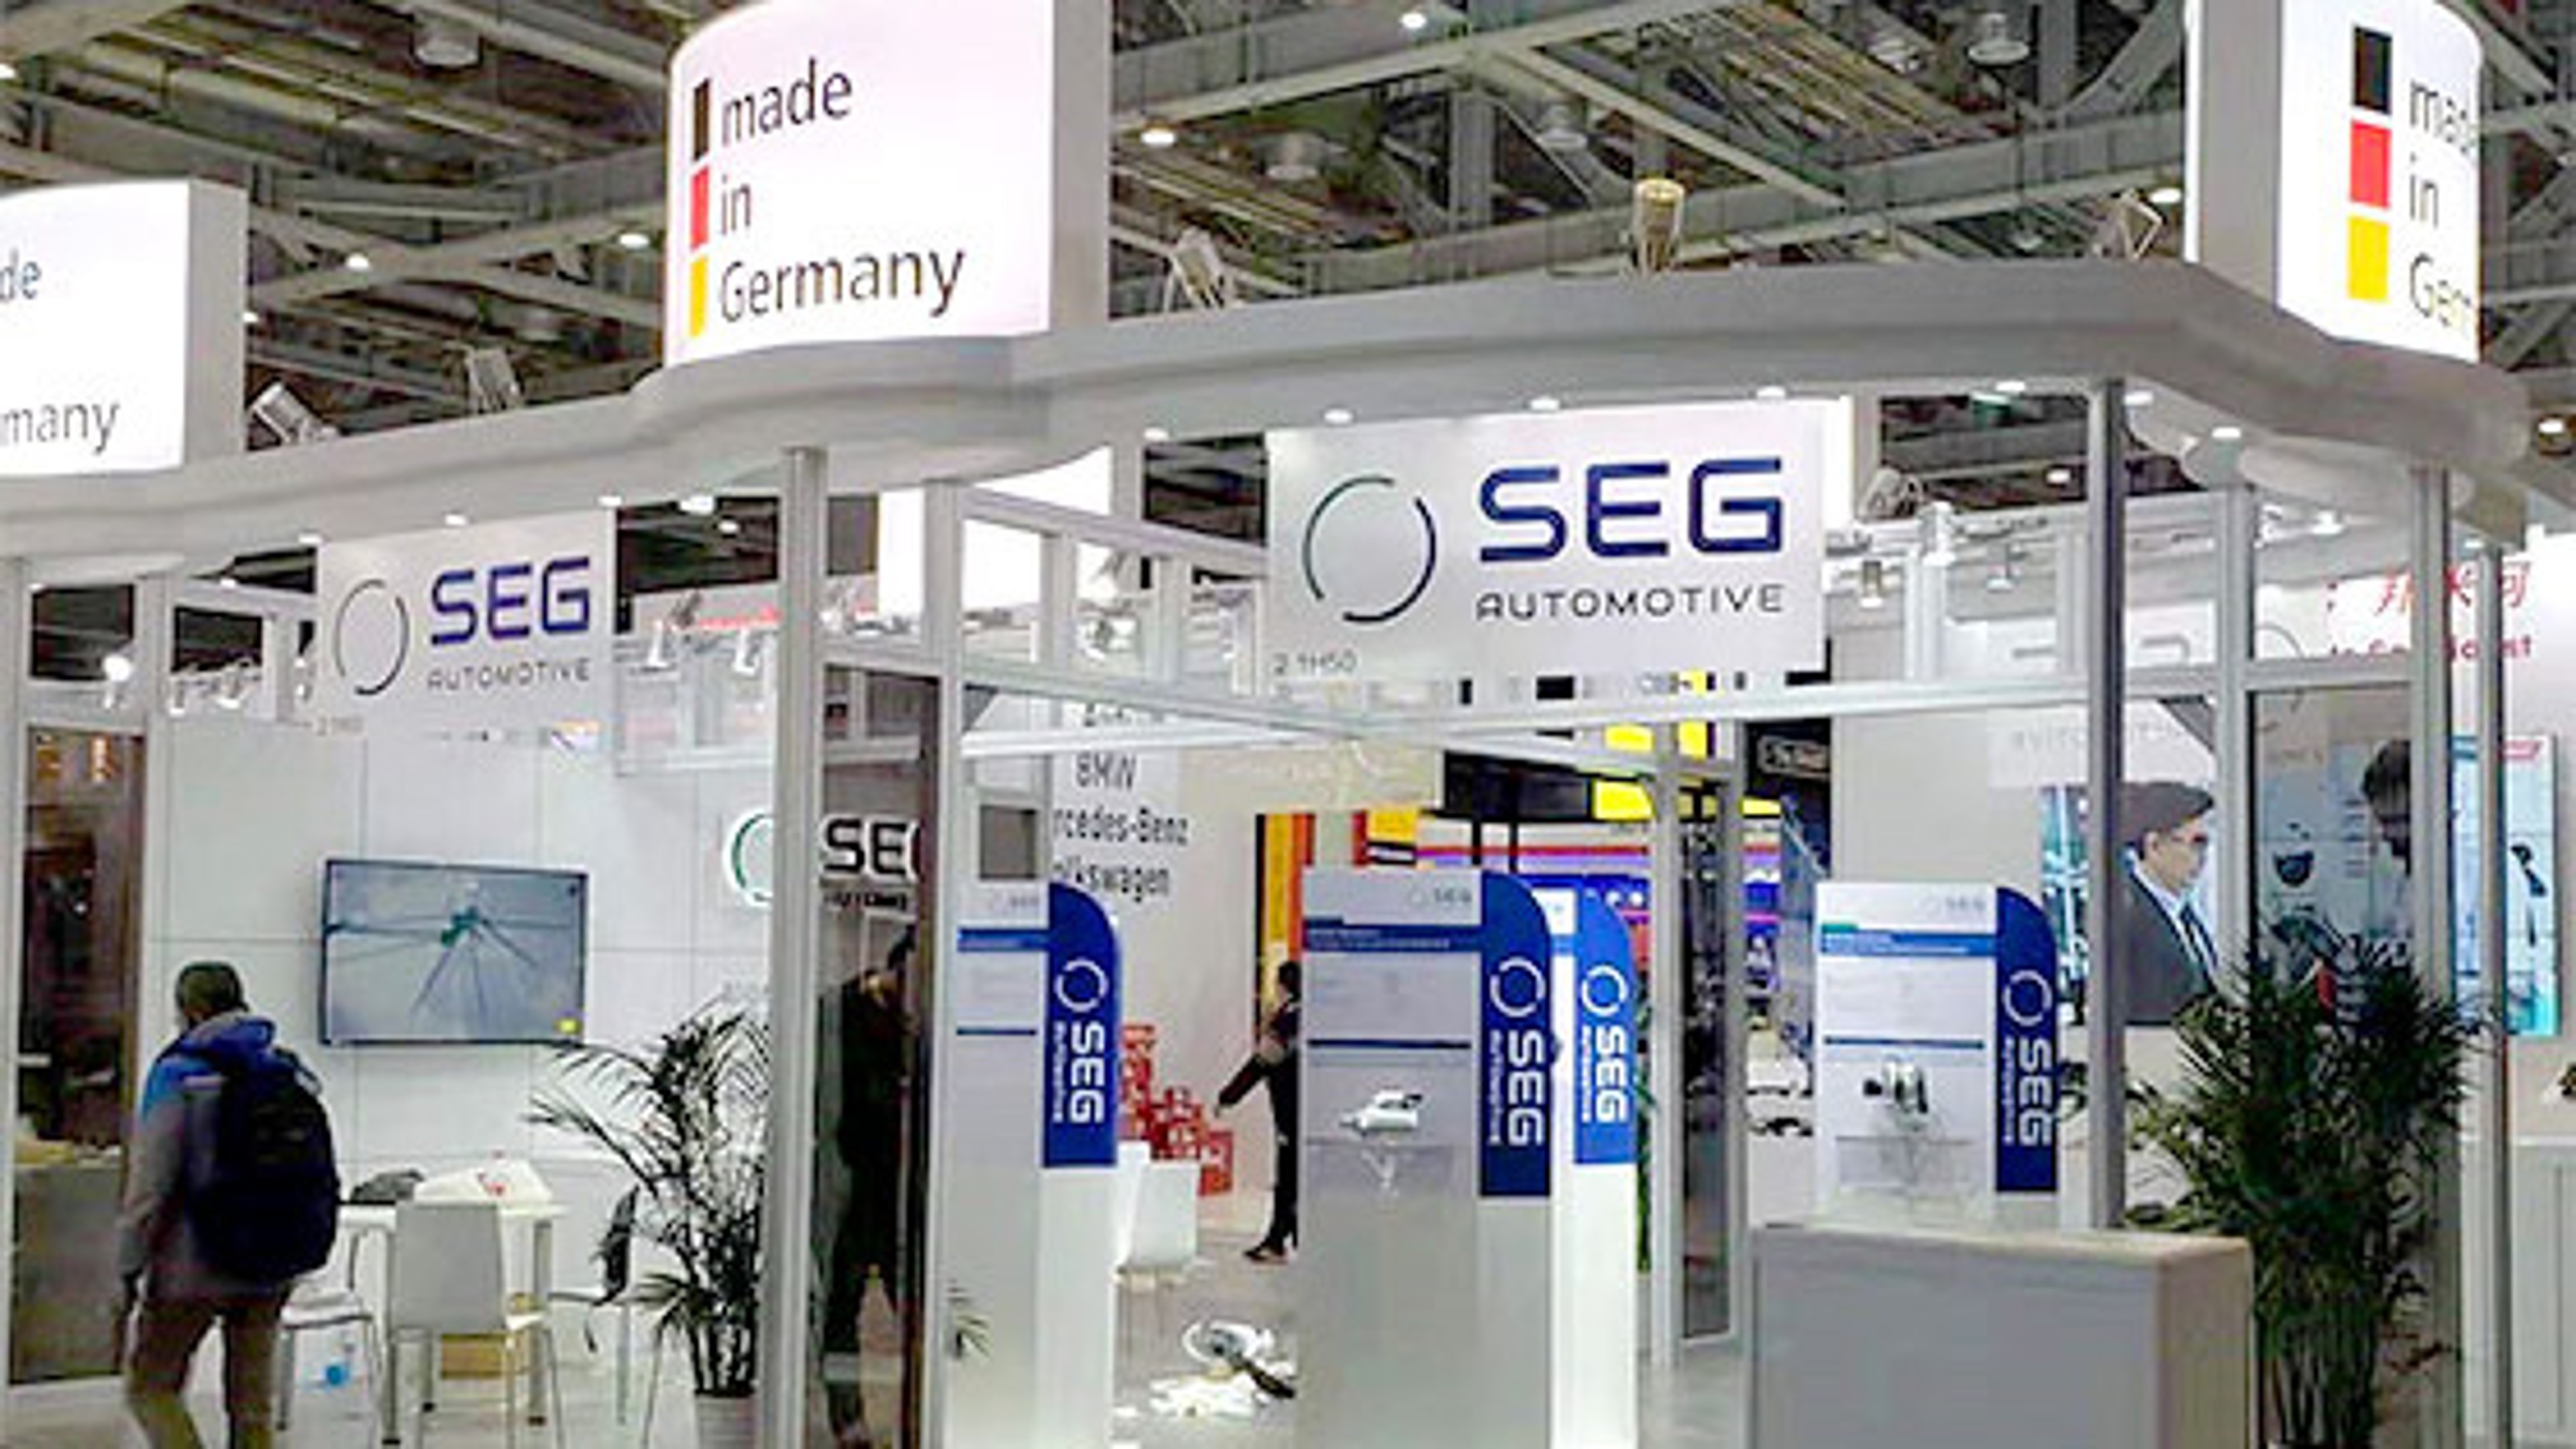 SEG Automotive Stand als Teil des deutschen Pavillons auf der Automechanika Shanghai